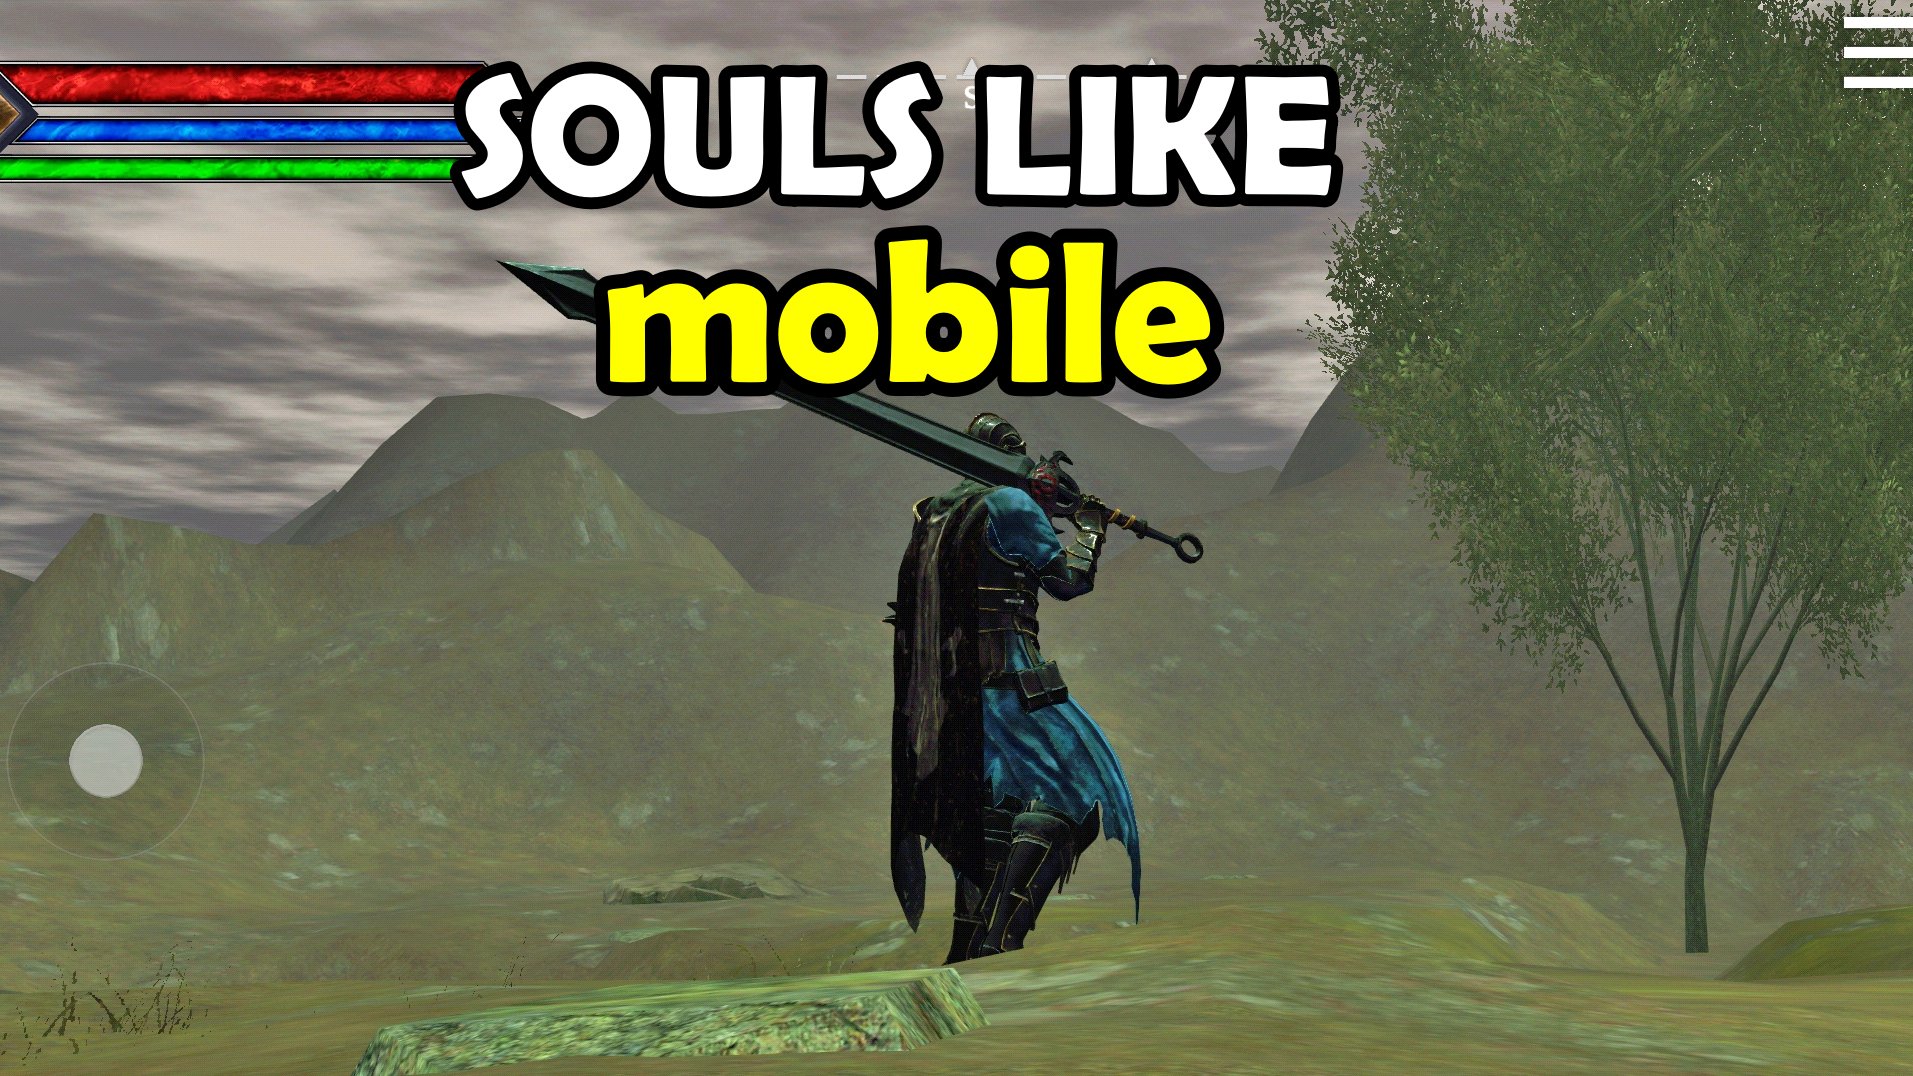 melhores-souls-like-mobile Os 6 Melhores Jogos Parecidos com Dark Souls para Celular